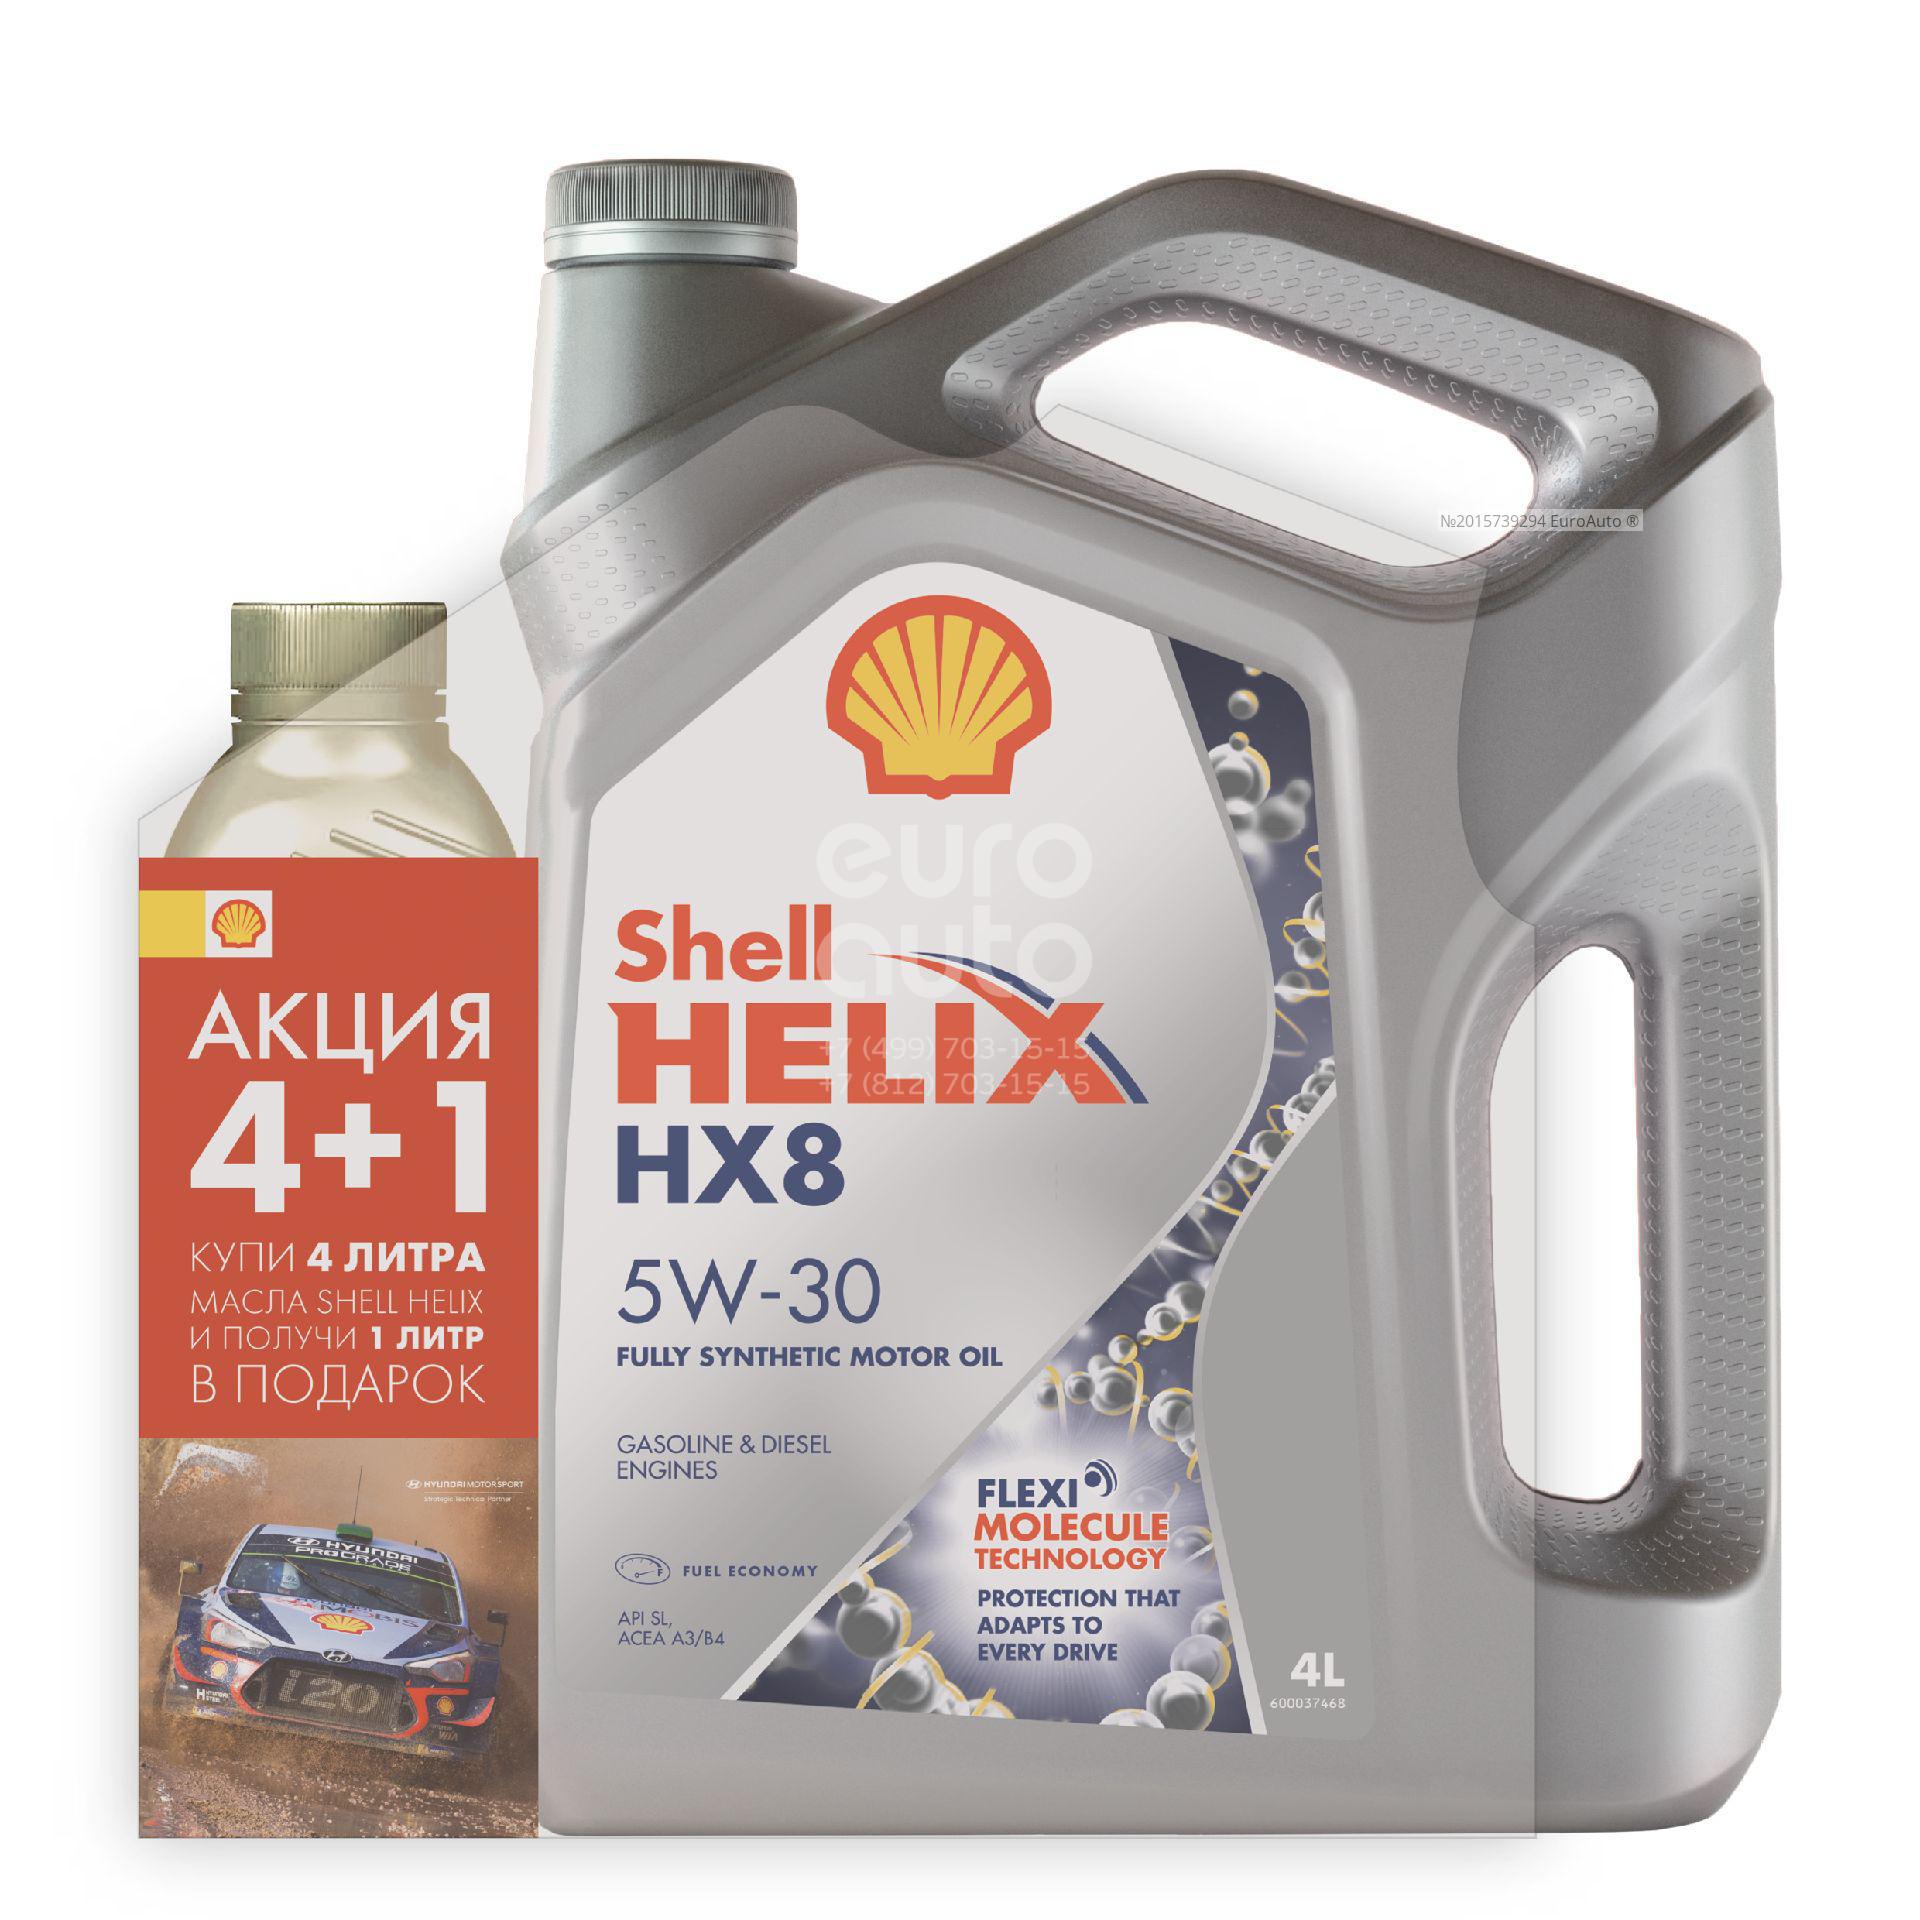 Shell моторное 5w30 hx8. Shell hx8 5w30. Shell hx8 5w30 a5/b5. Масло моторное Shell hx8 Synthetic 5w30 4л.